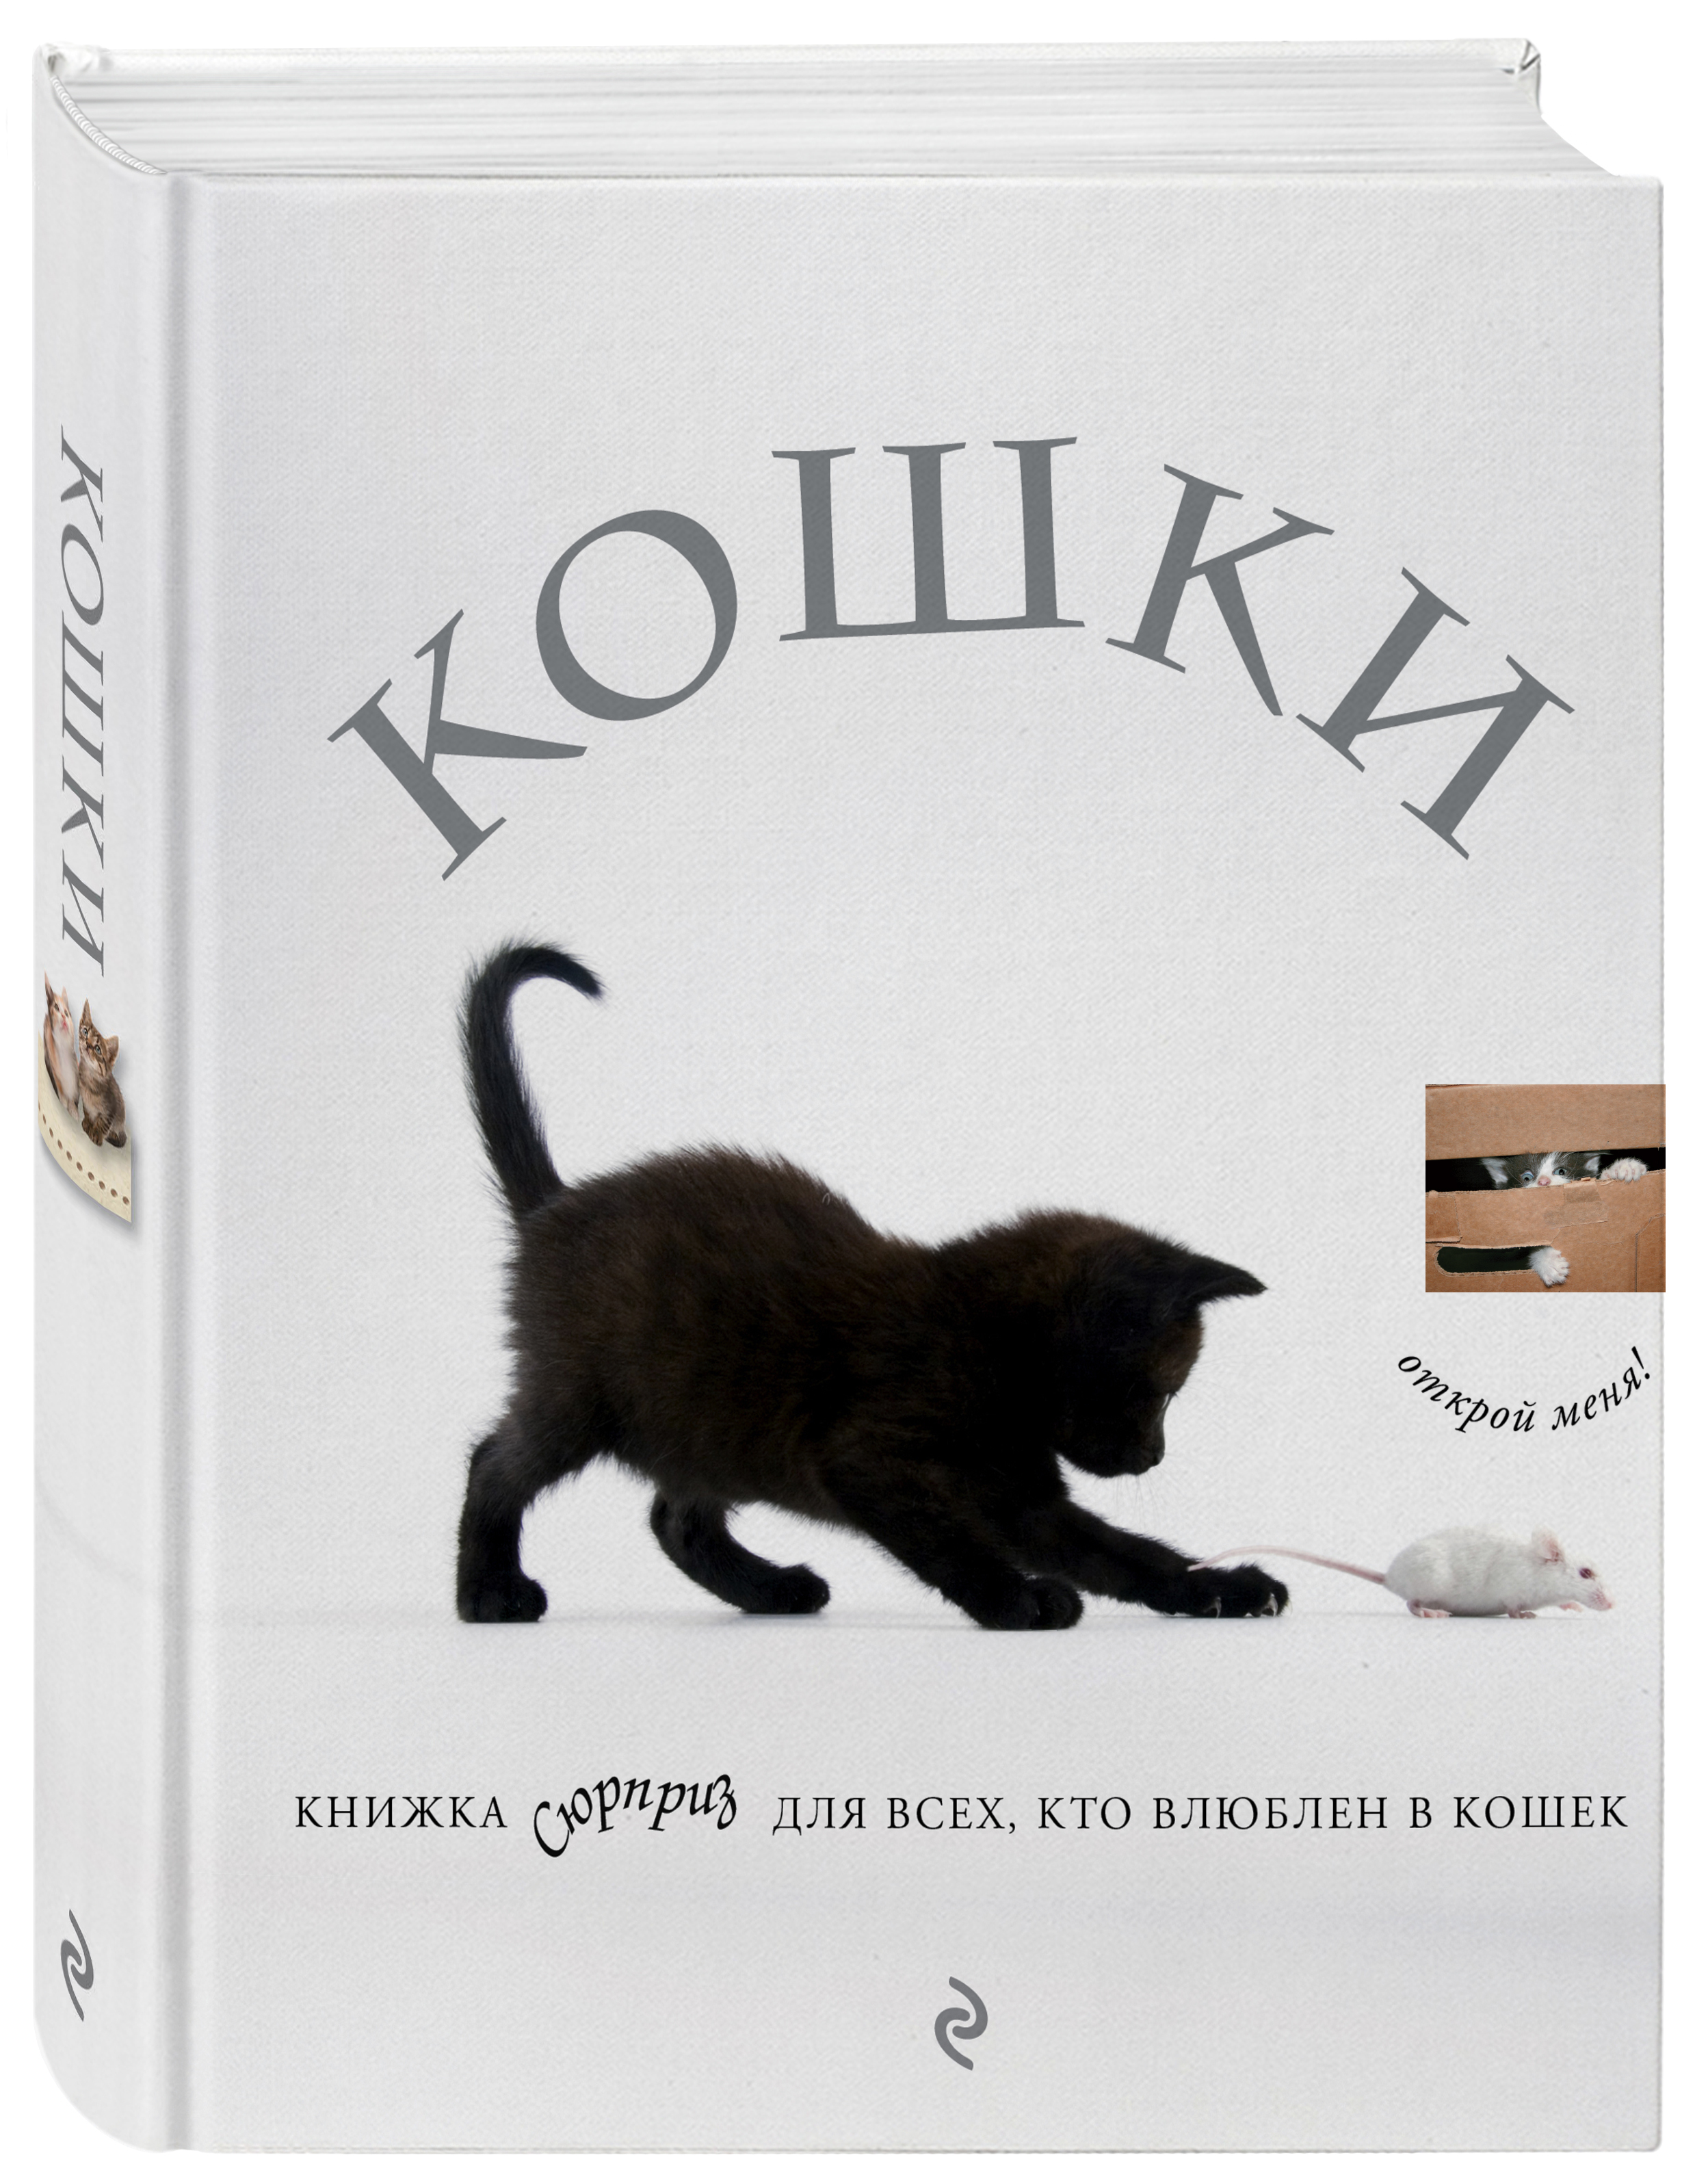 Отзывы про кошку. Книги про кошек. Книги о кошках Художественные. Книга сюрприз кошки.